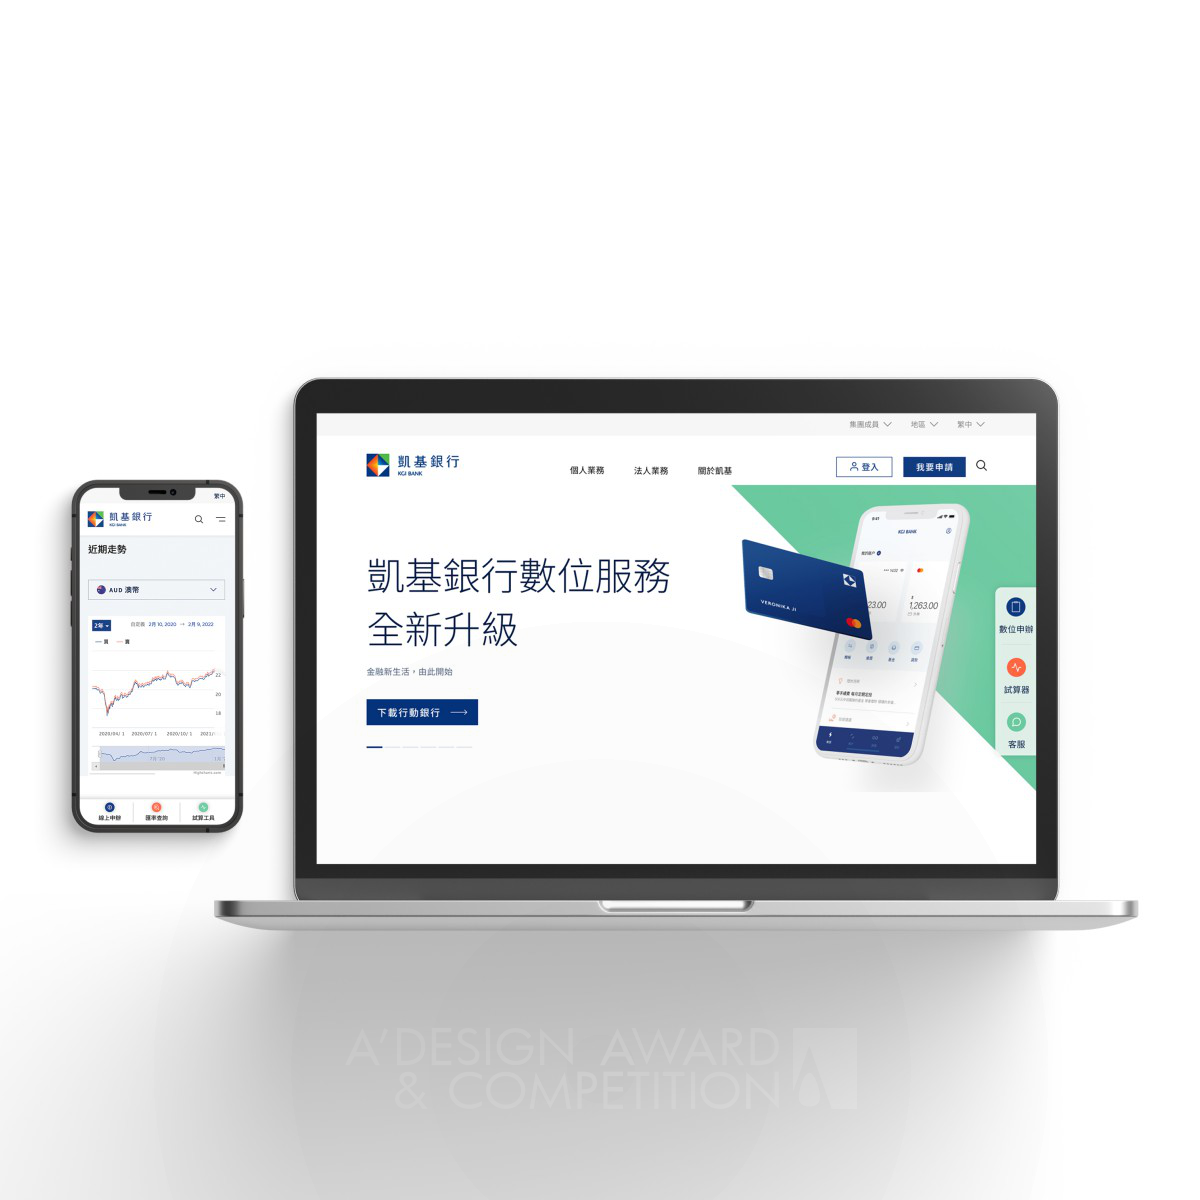 KGI Bank Website Redesign